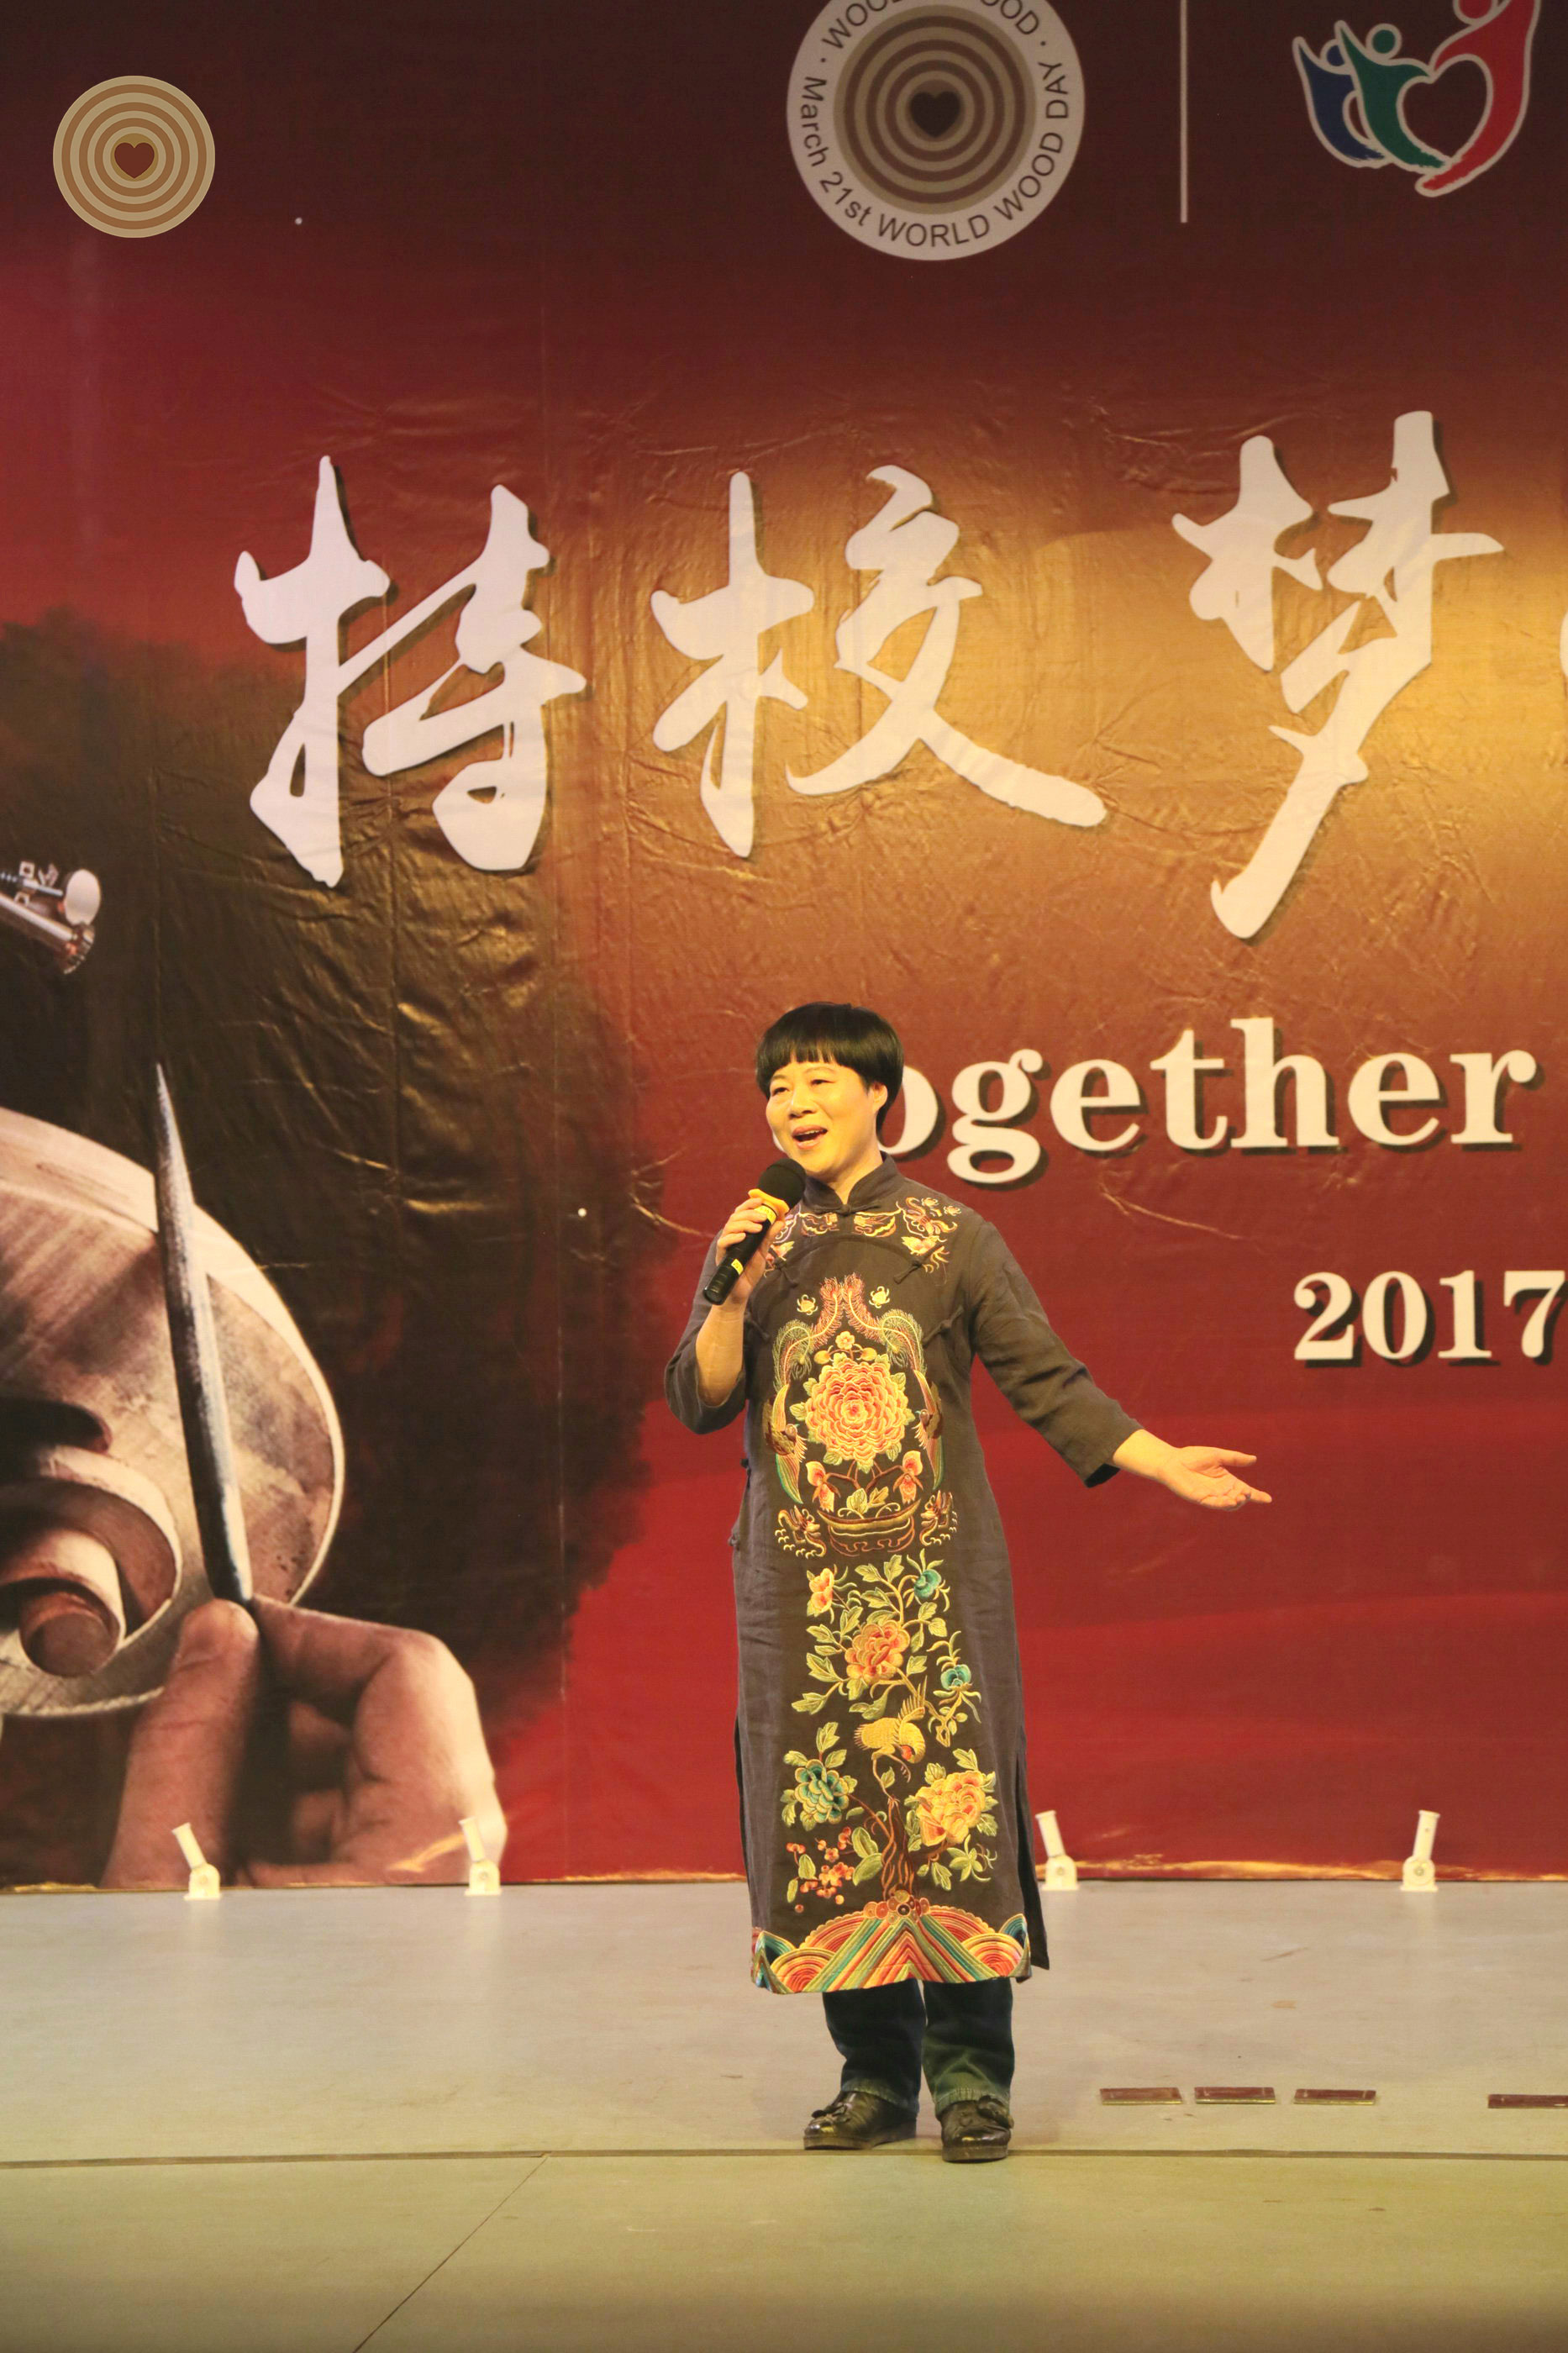 Regional Event, 2017 WWD, Wenzou